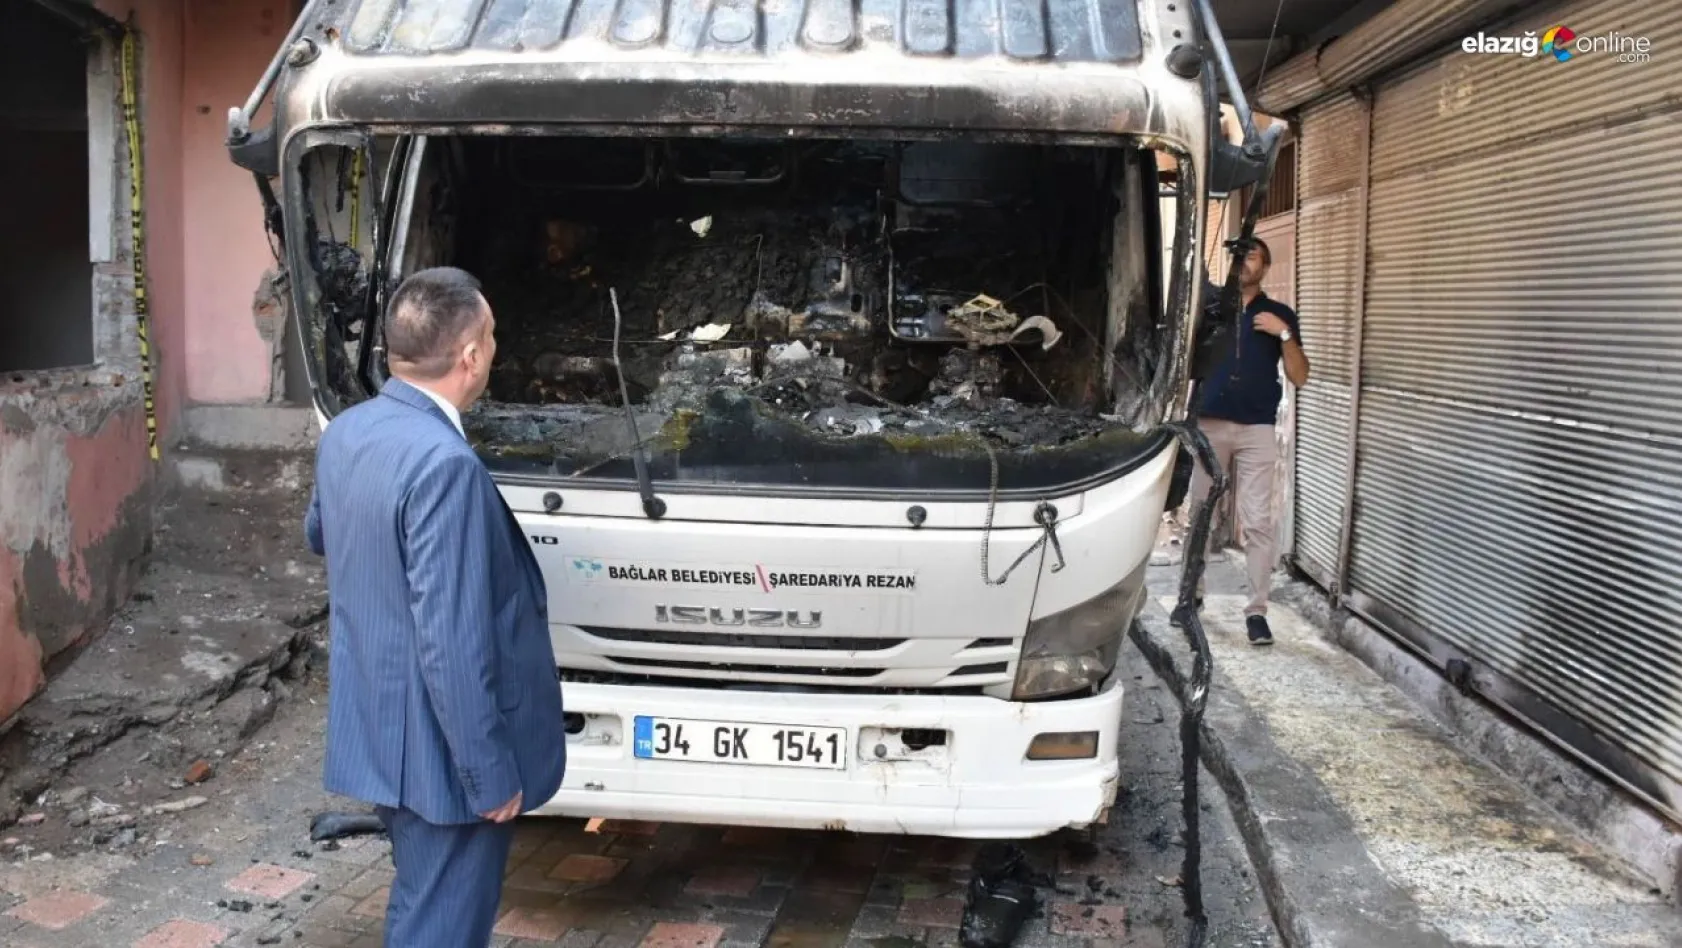 Bağlar Belediye Başkanı Beyoğlu, çöp aracının yakılmasına tepki gösterdi